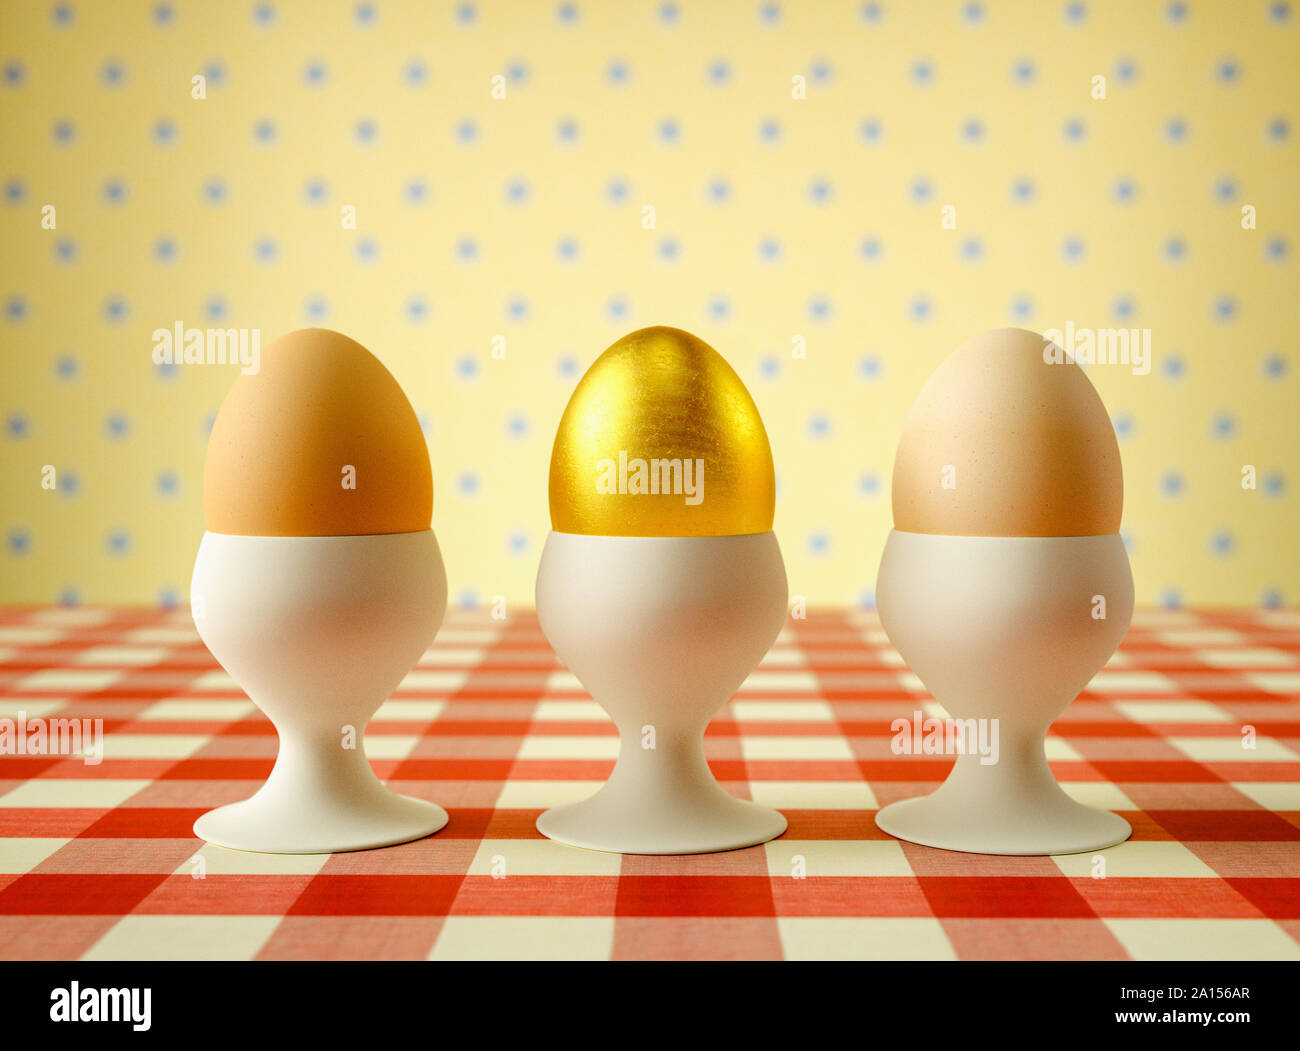 Fila di uova uovo in tazze con un uovo dorato Foto Stock